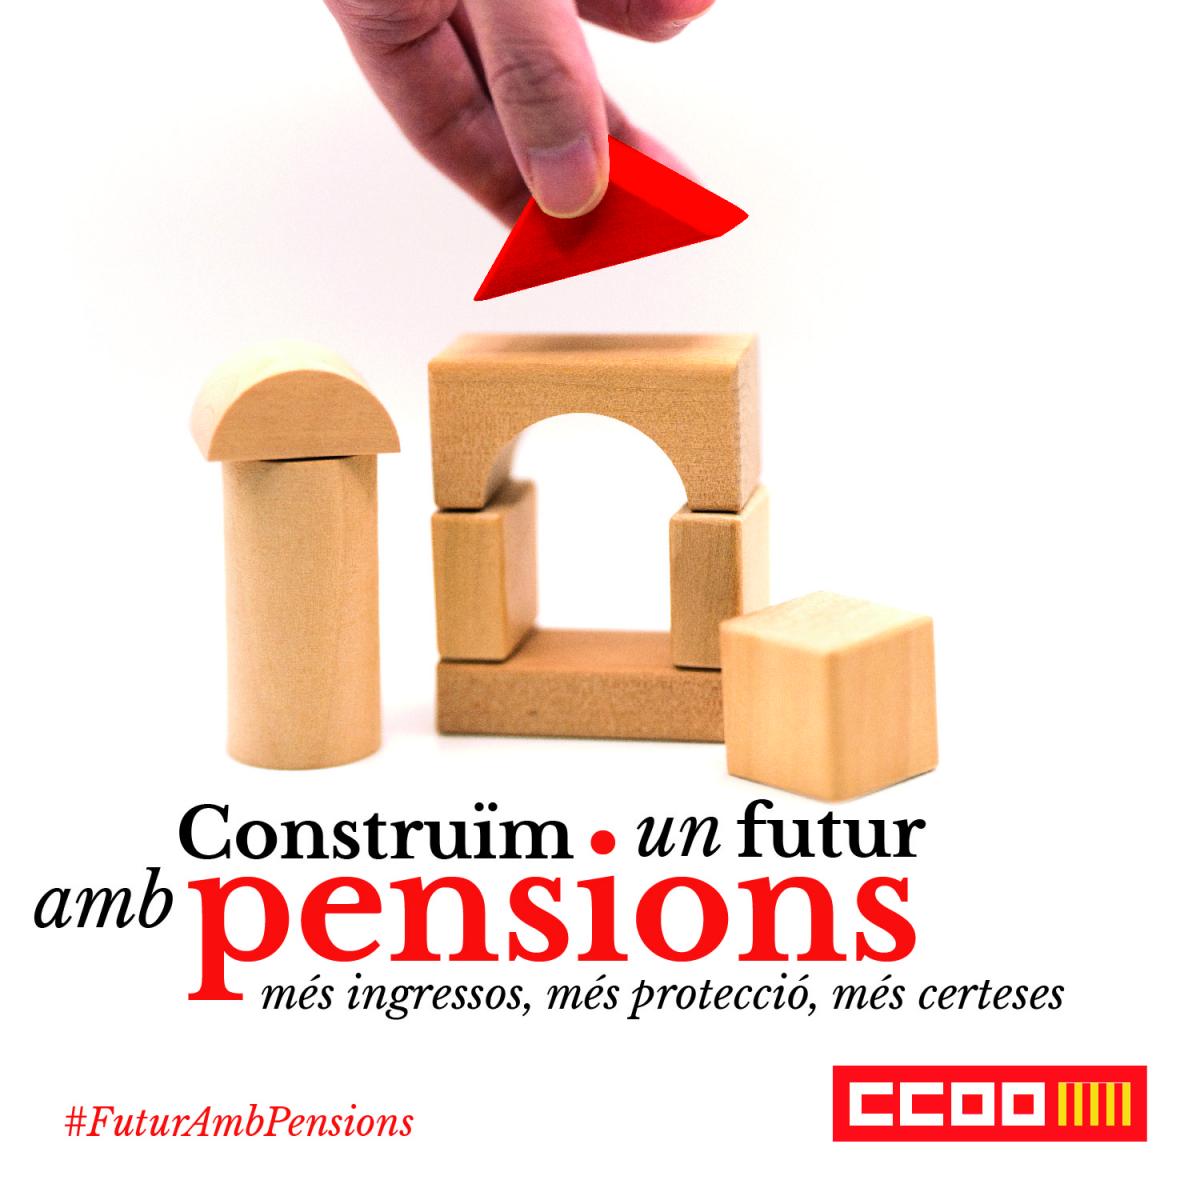 Futur amb pensions